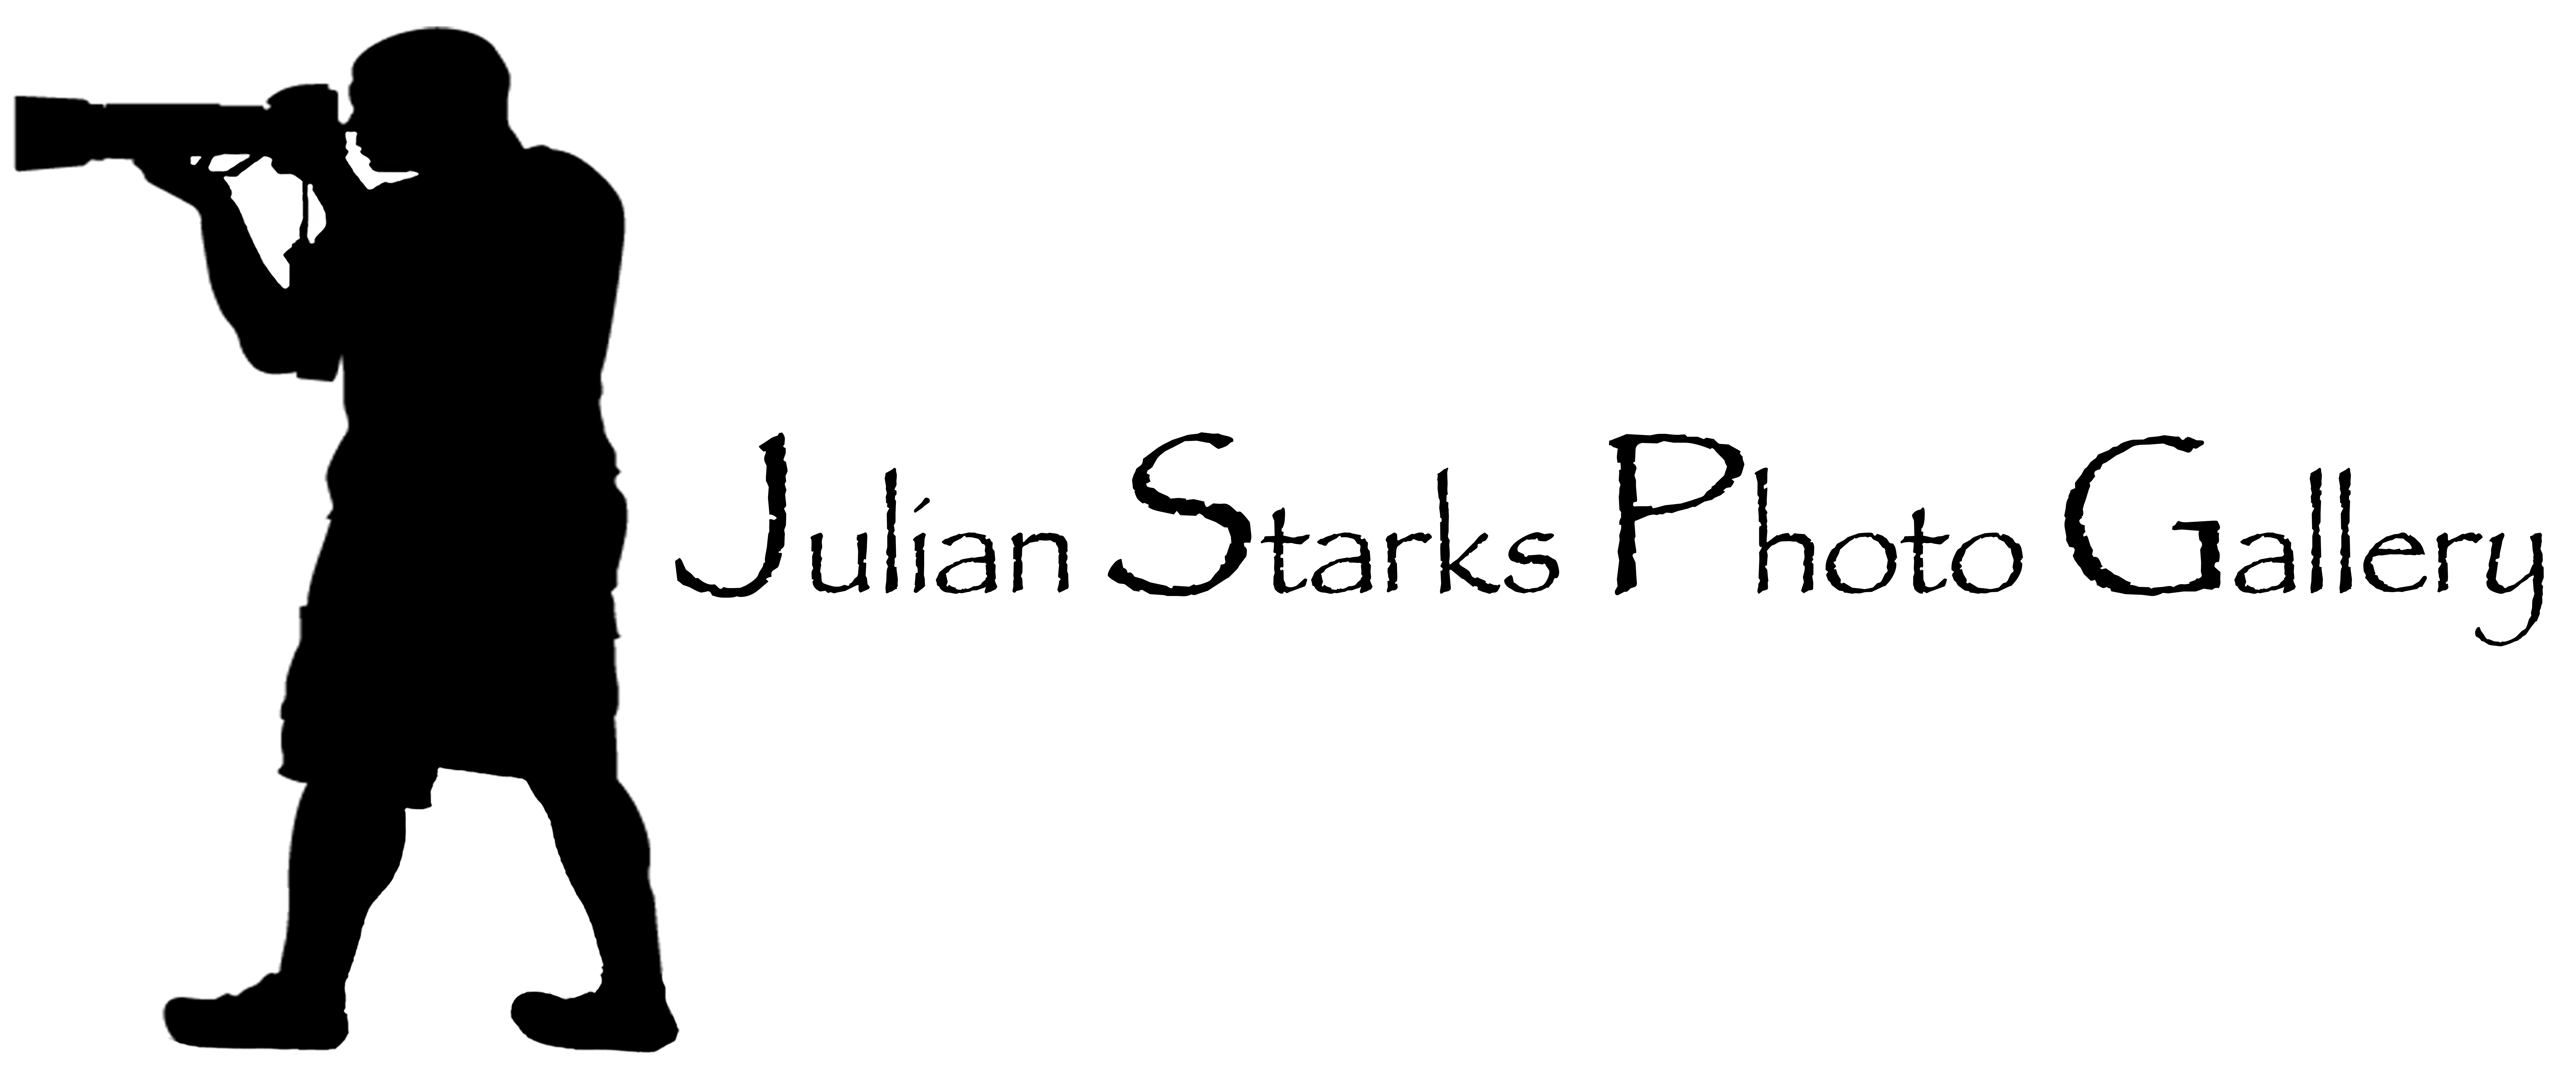 Julian Starks Photo Gallery